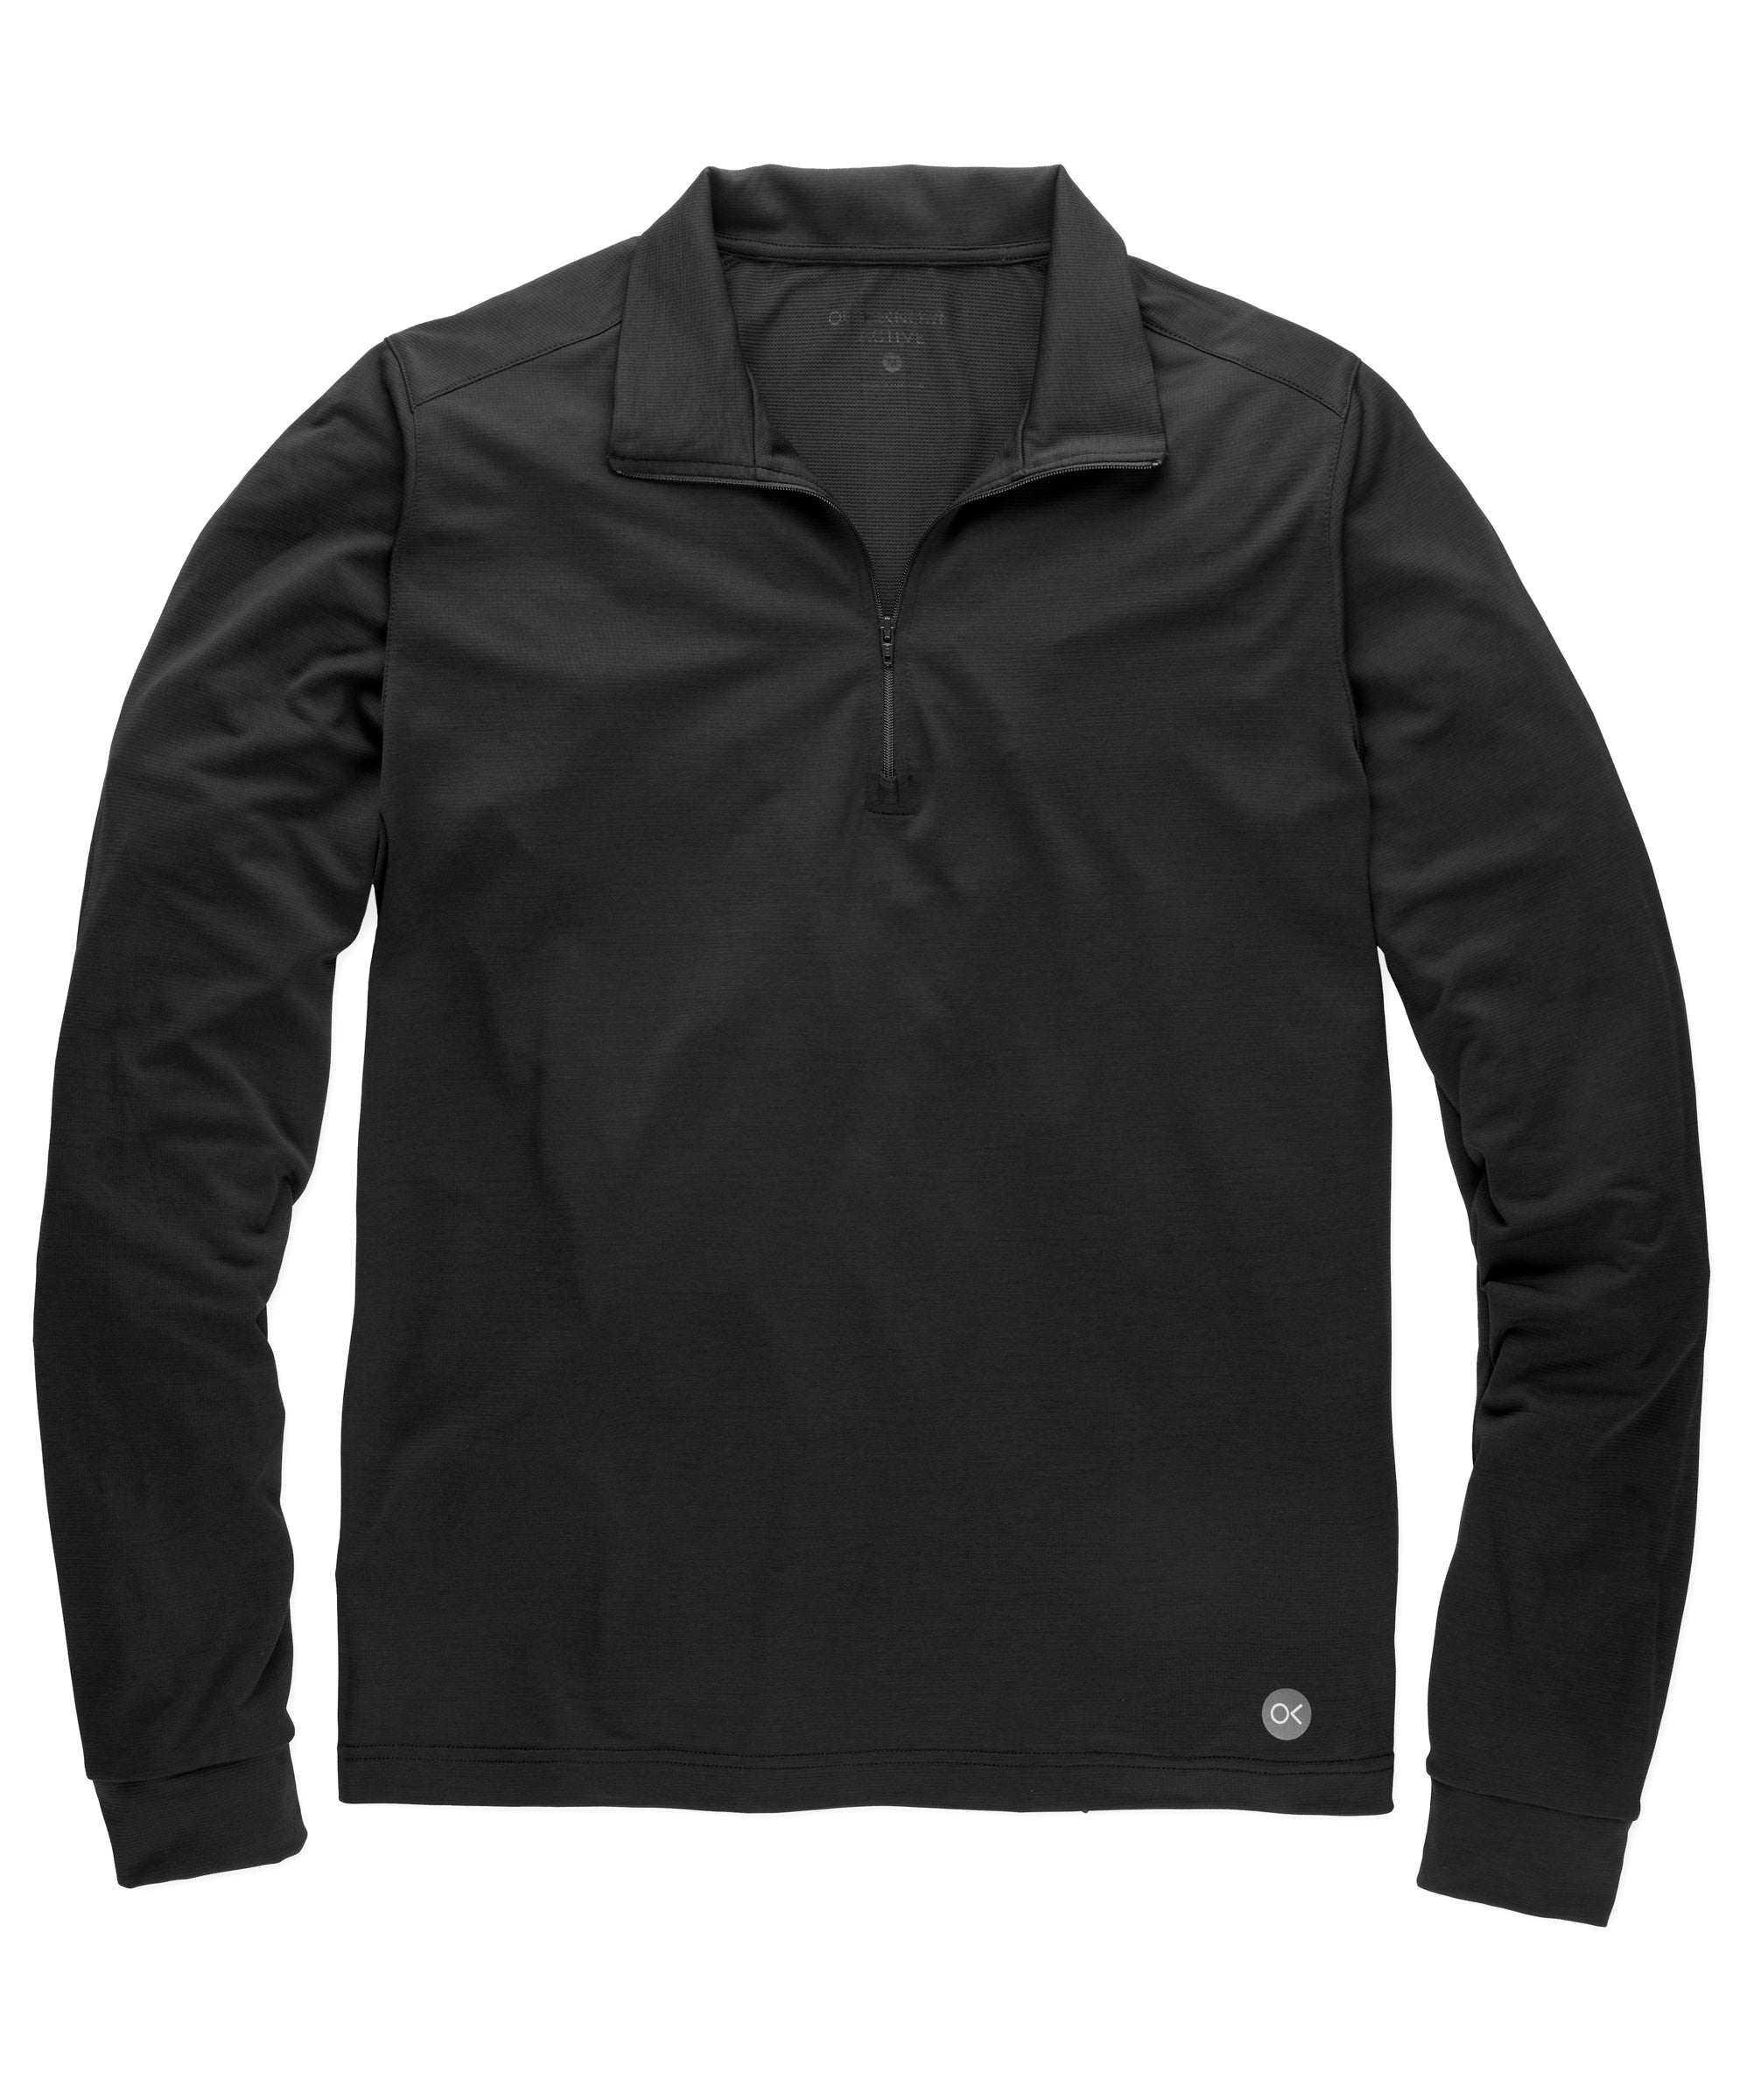 Vitality Half Zip | Men's Sweatshirts | Outerknown